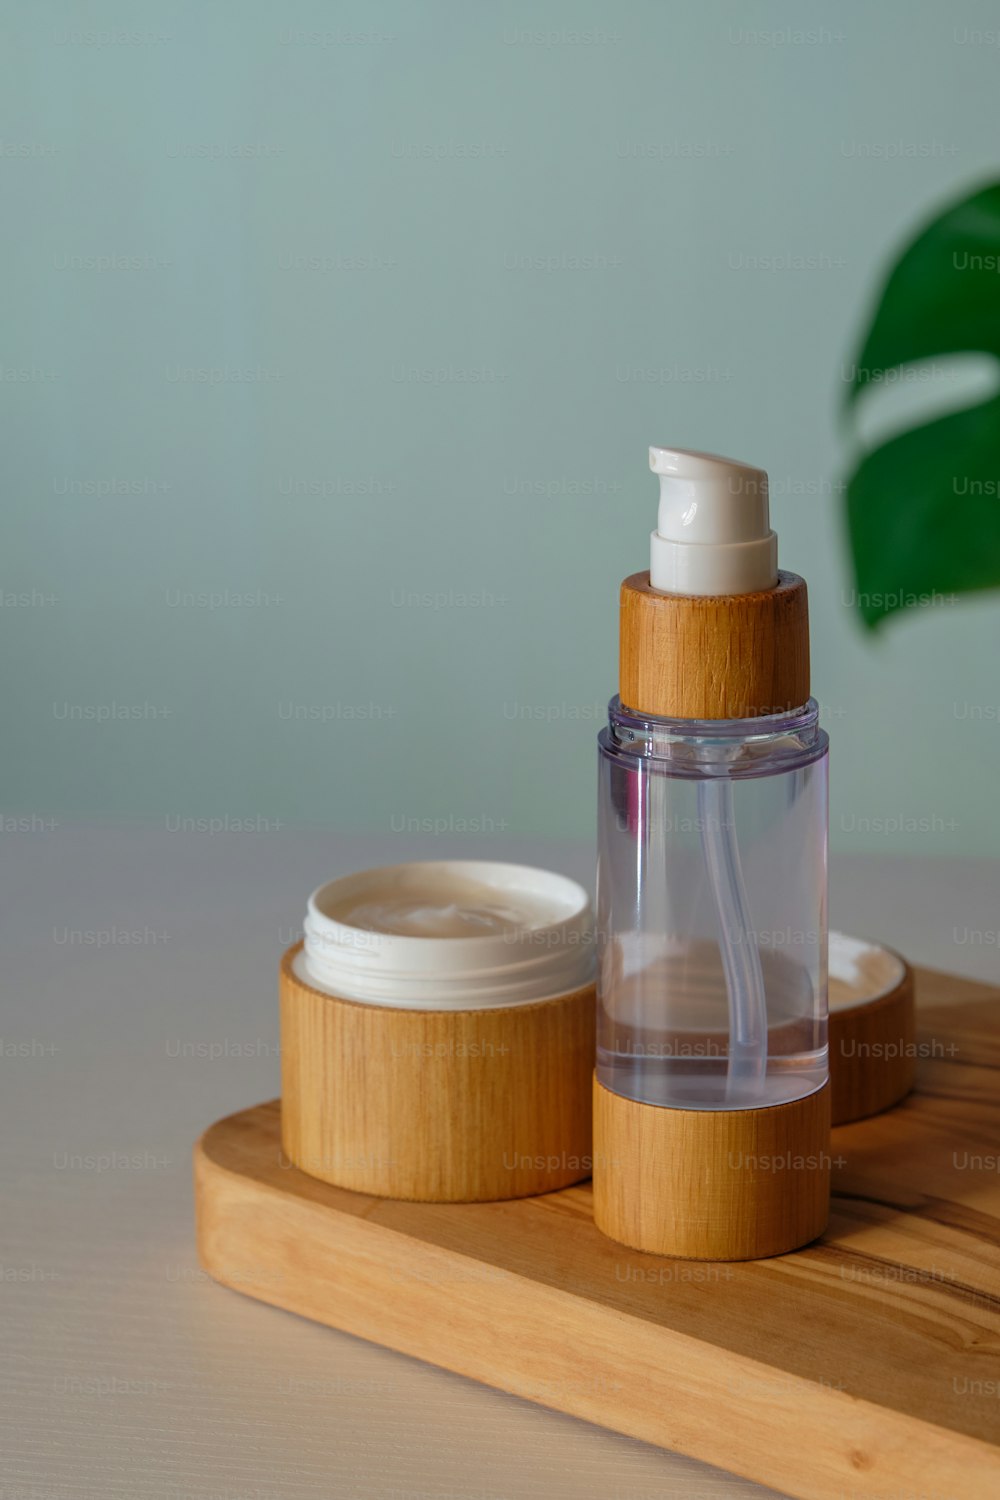 Set de cosmética natural. Crema hidratante en tarro de bambú ecológico y loción corporal. Diseño de empaque de productos orgánicos para el cuidado de la piel.